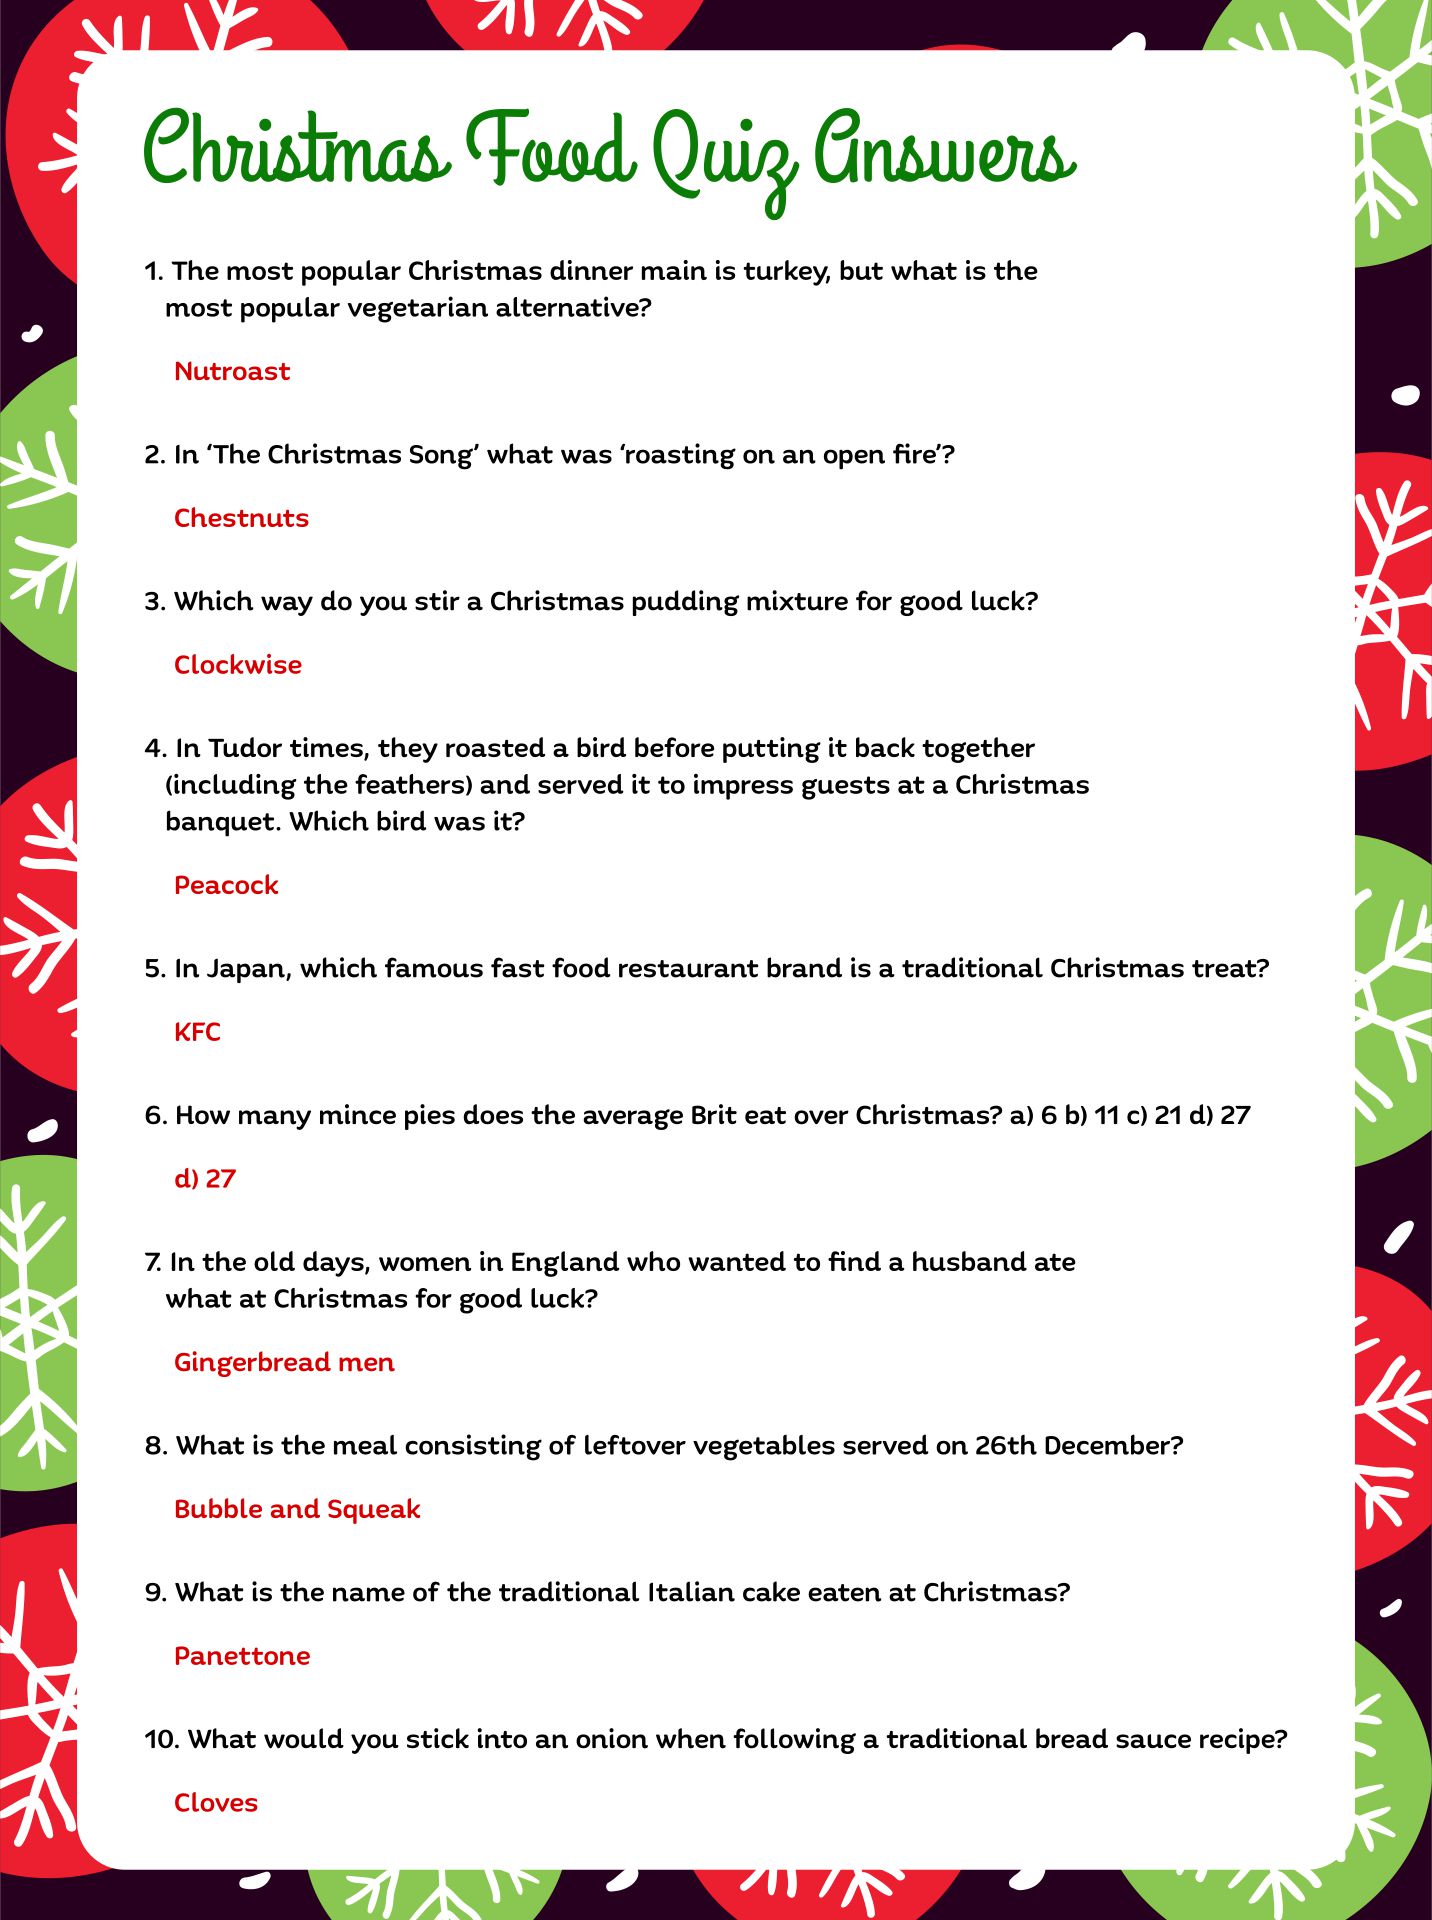 Christmas Food Trivia Questions Printable